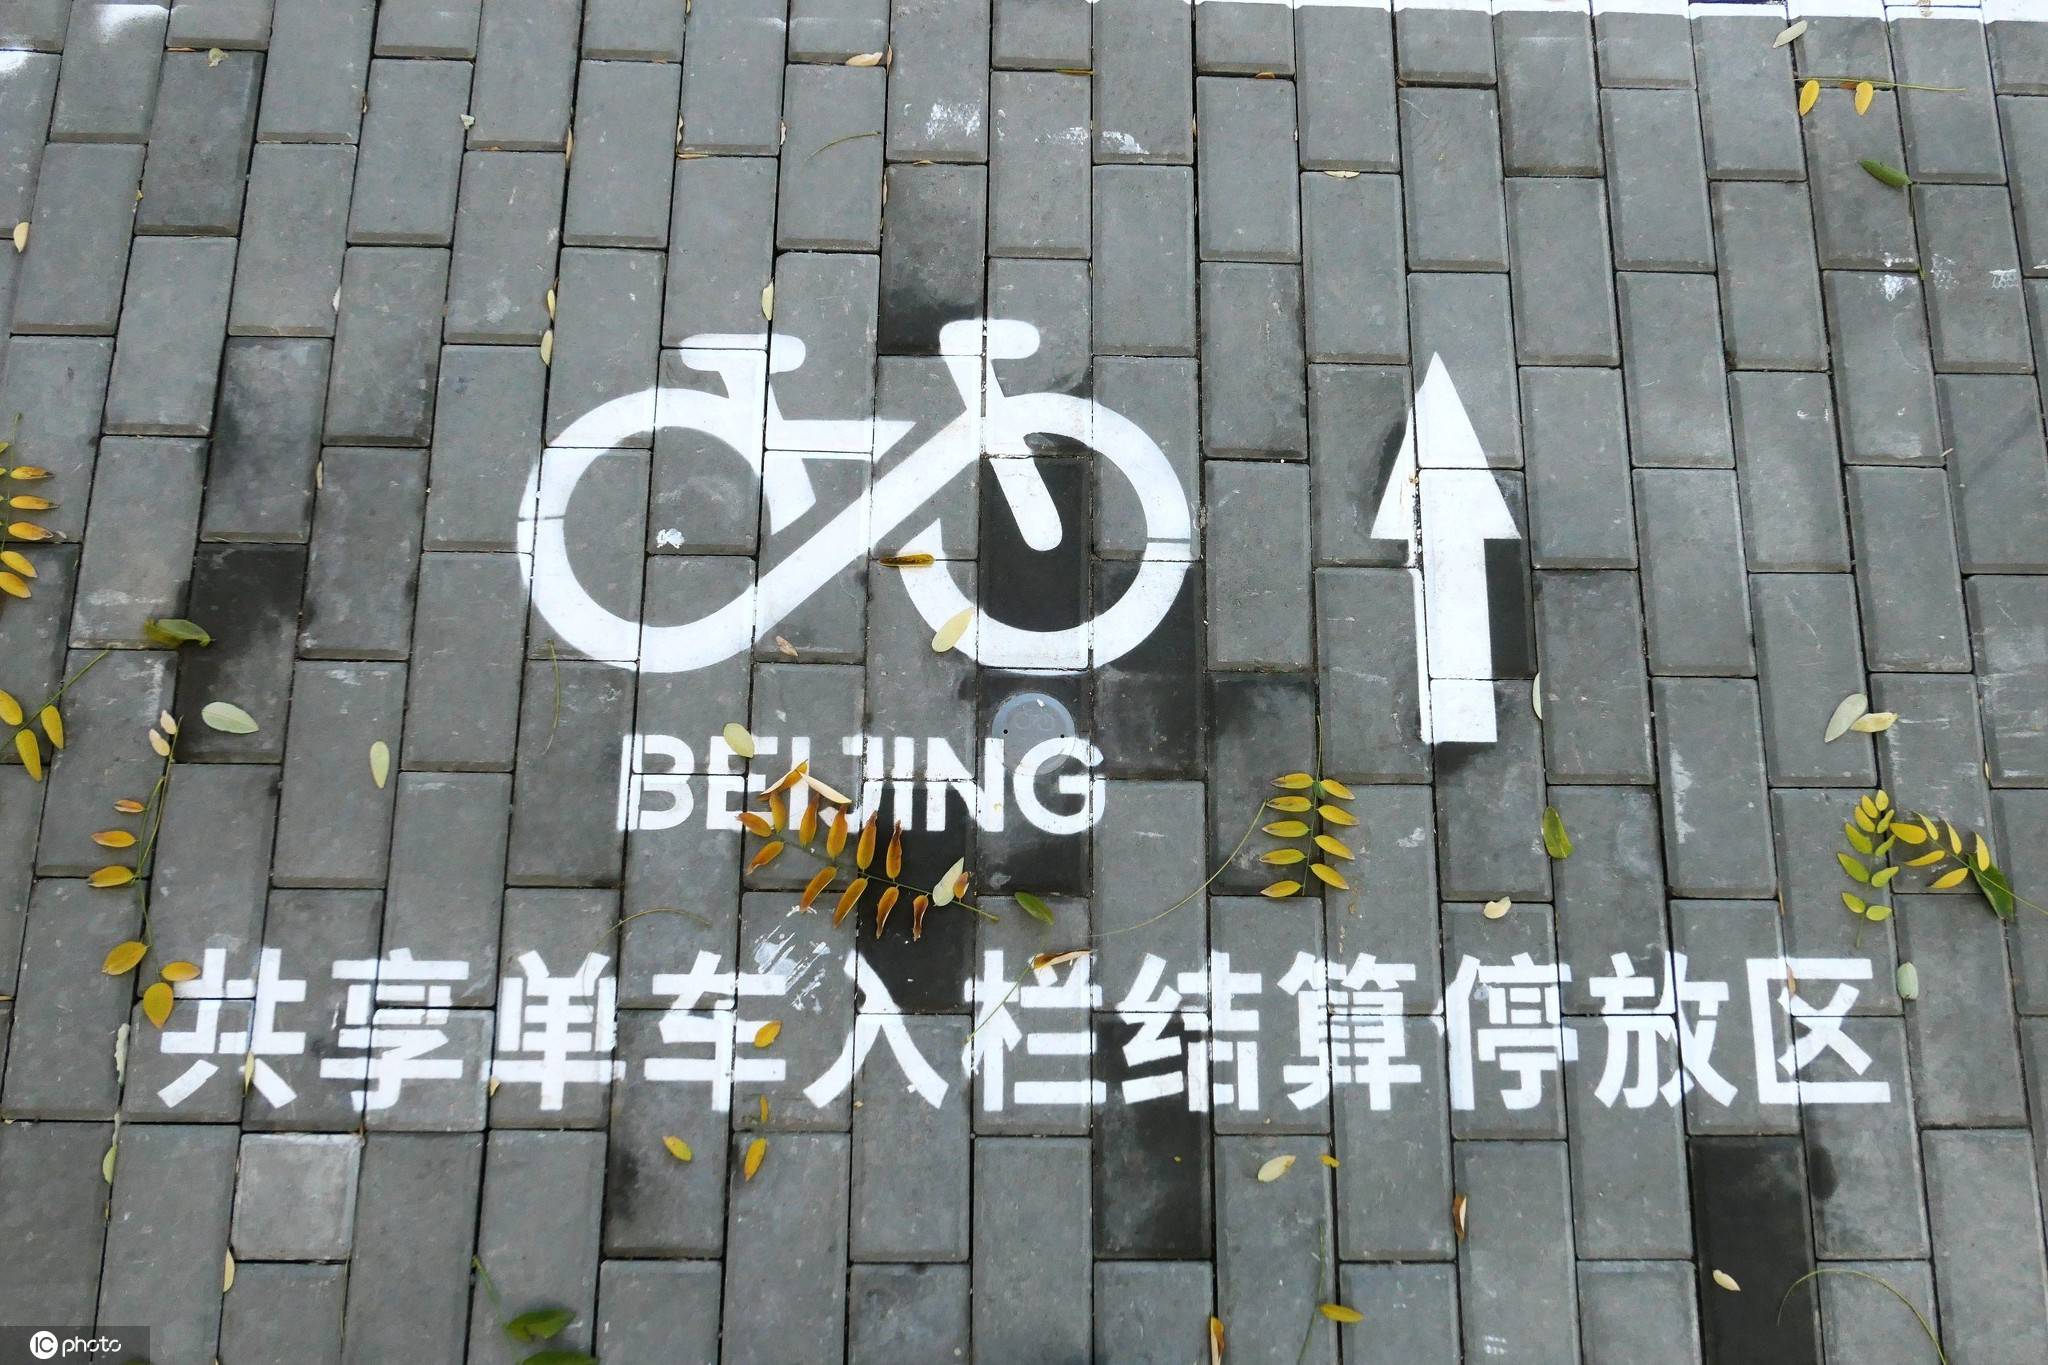 在共享单车停车位,上面既有自行车的标识,也有方向指示箭头,共享单车